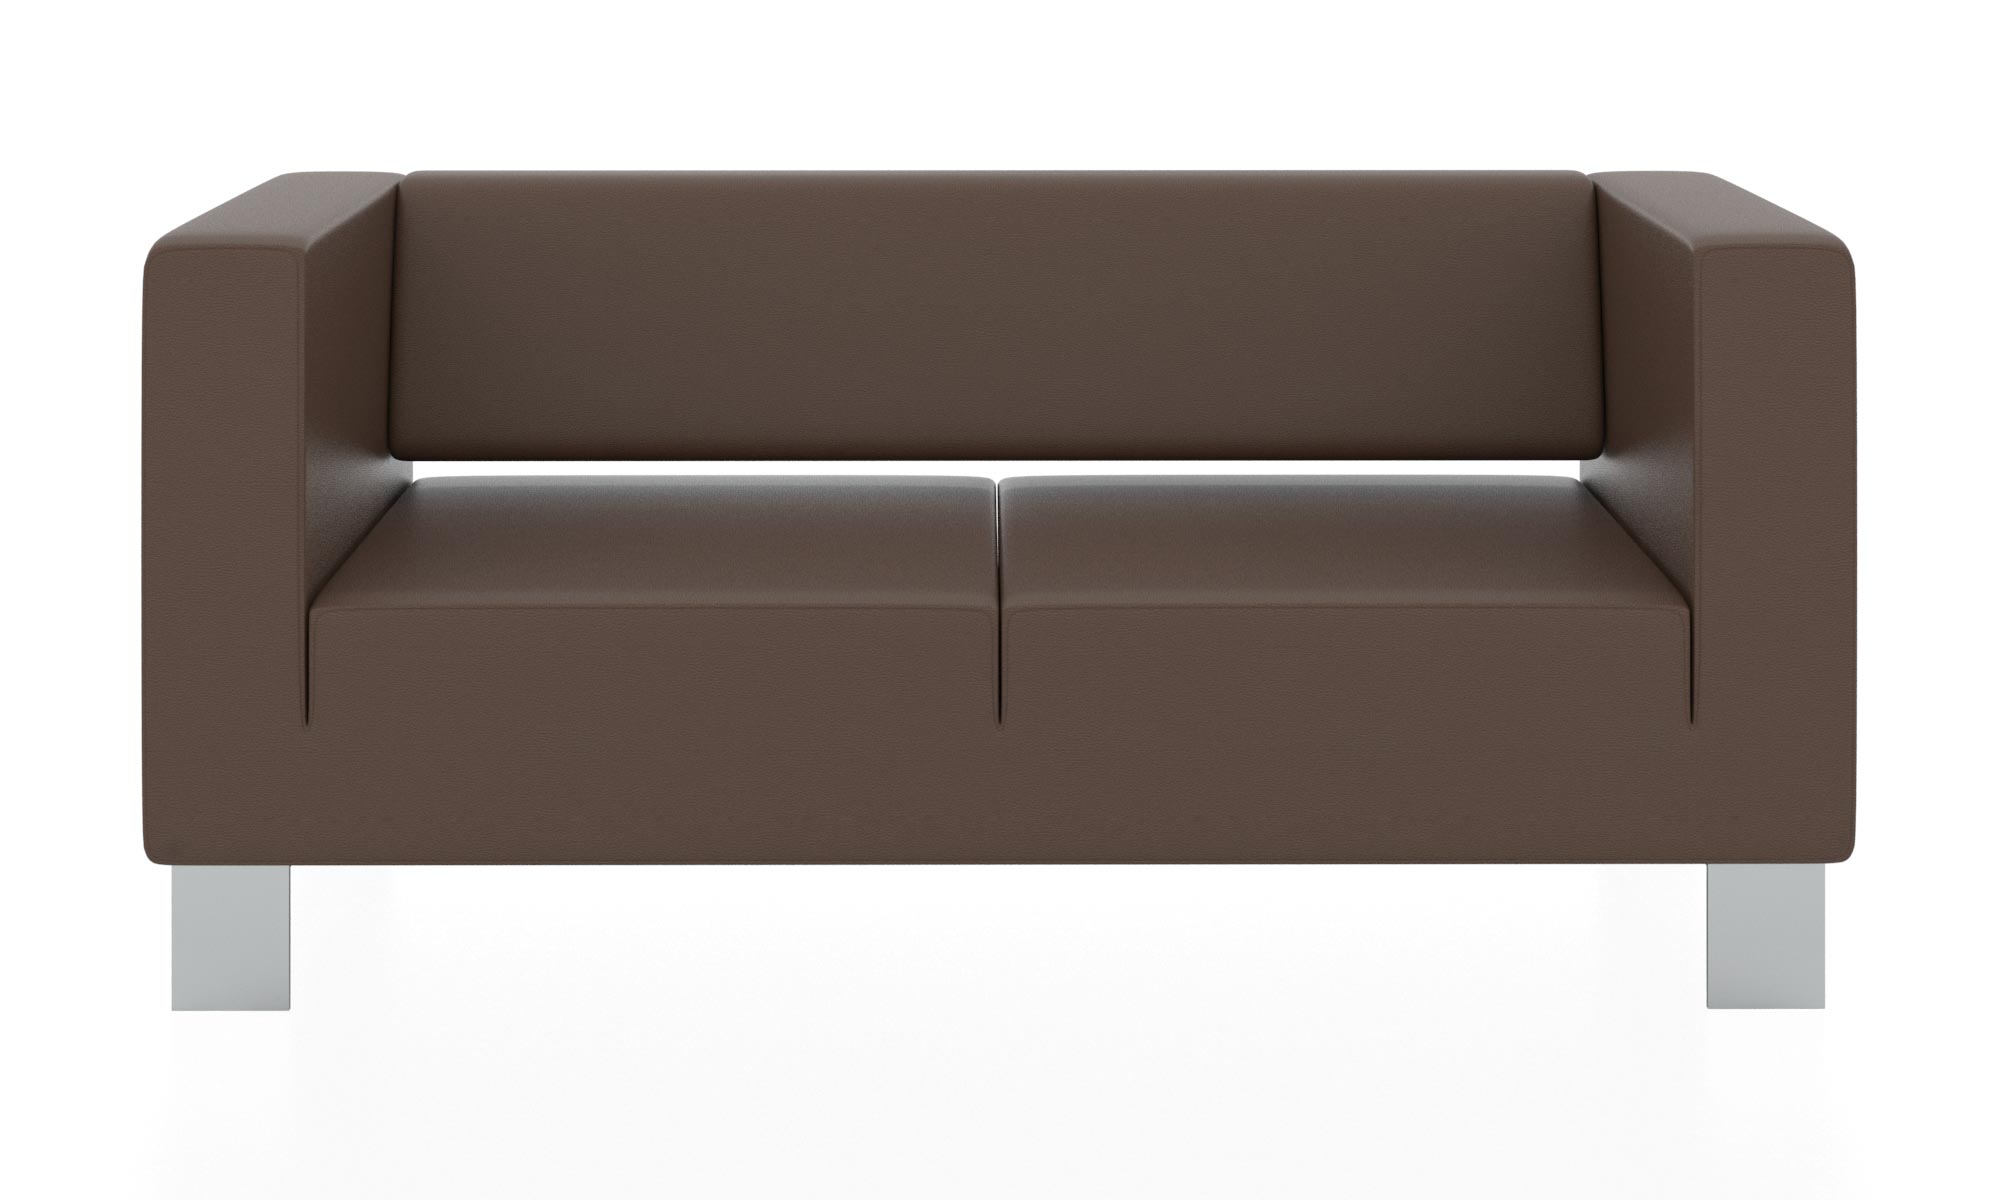 Современный двухместный диван с обивкой из кожзама. Цвет терракотовый(euroline 924).